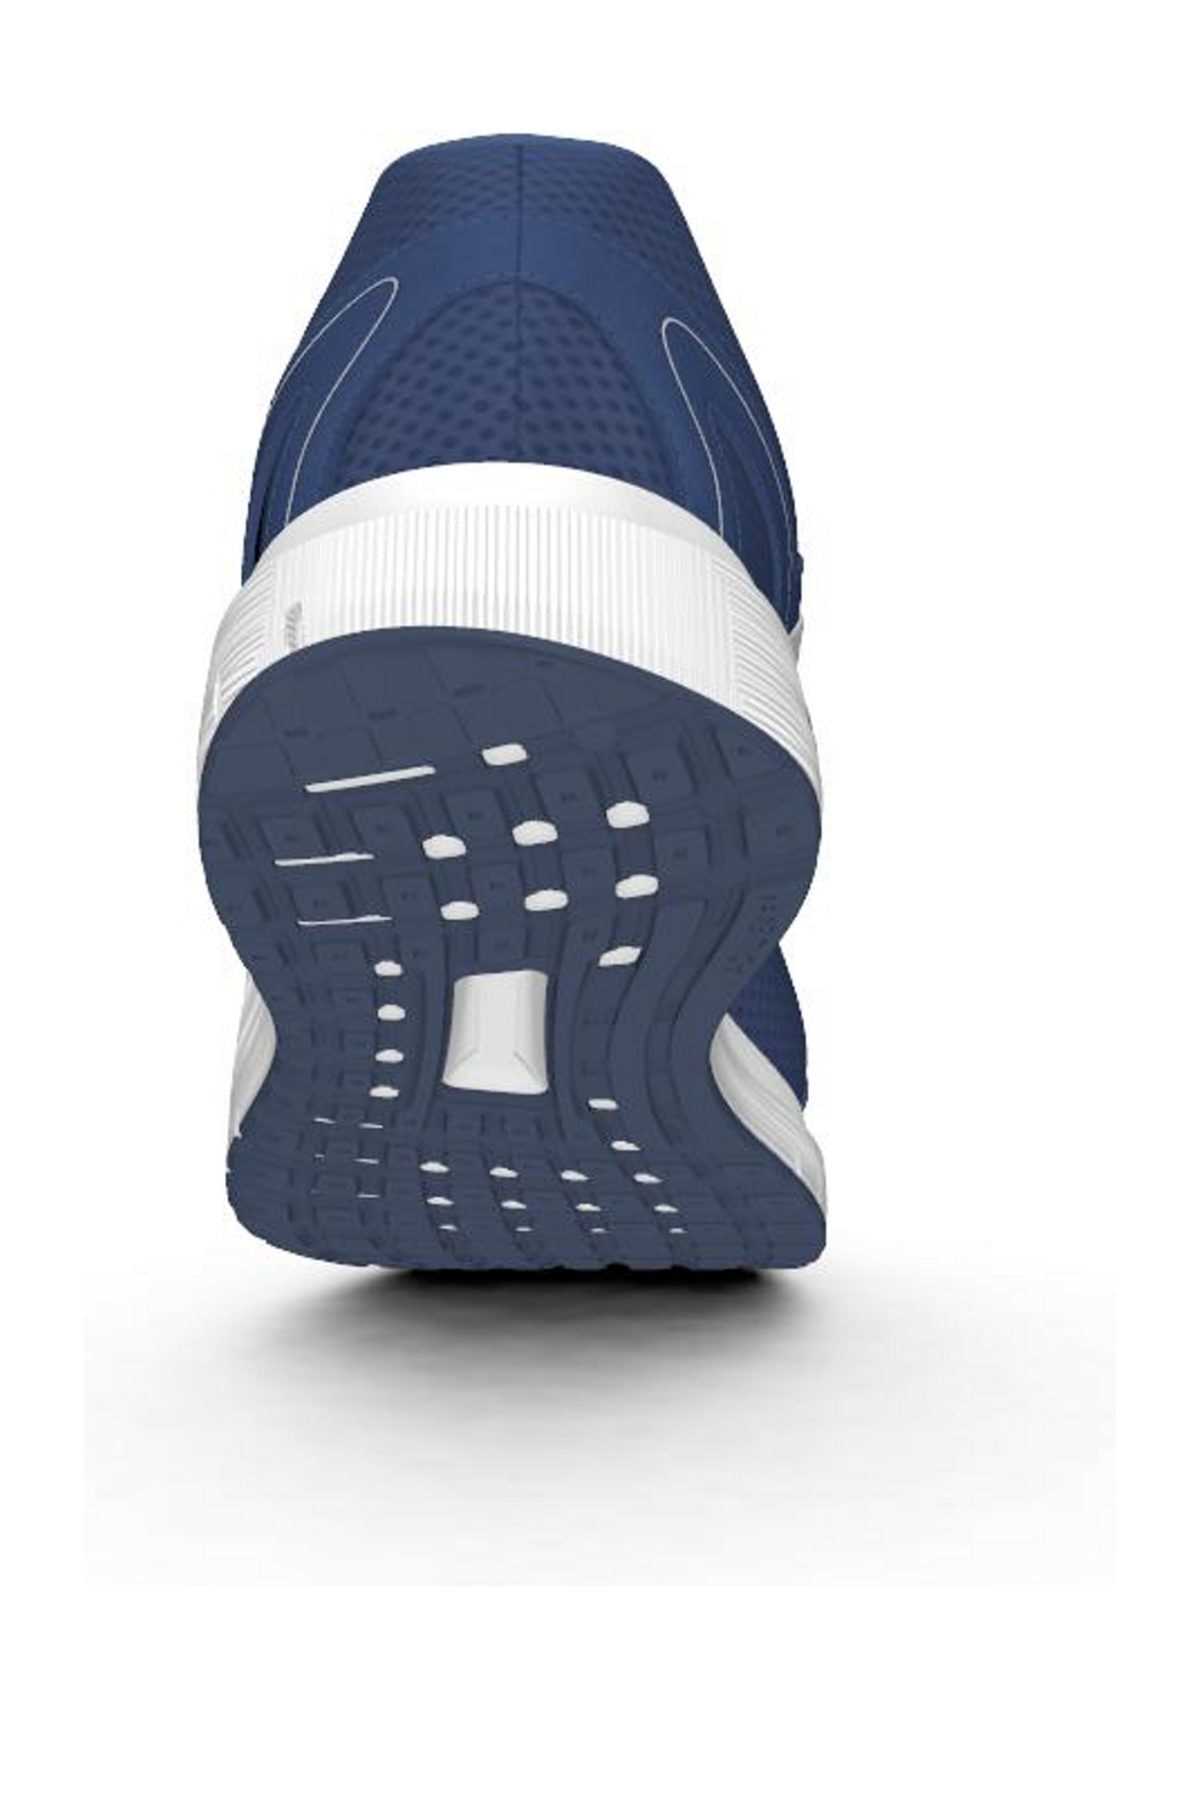 خرید پستی کفش مخصوص دویدن مردانه پارچه  برند آدیداس رنگ لاجوردی کد ty35174844